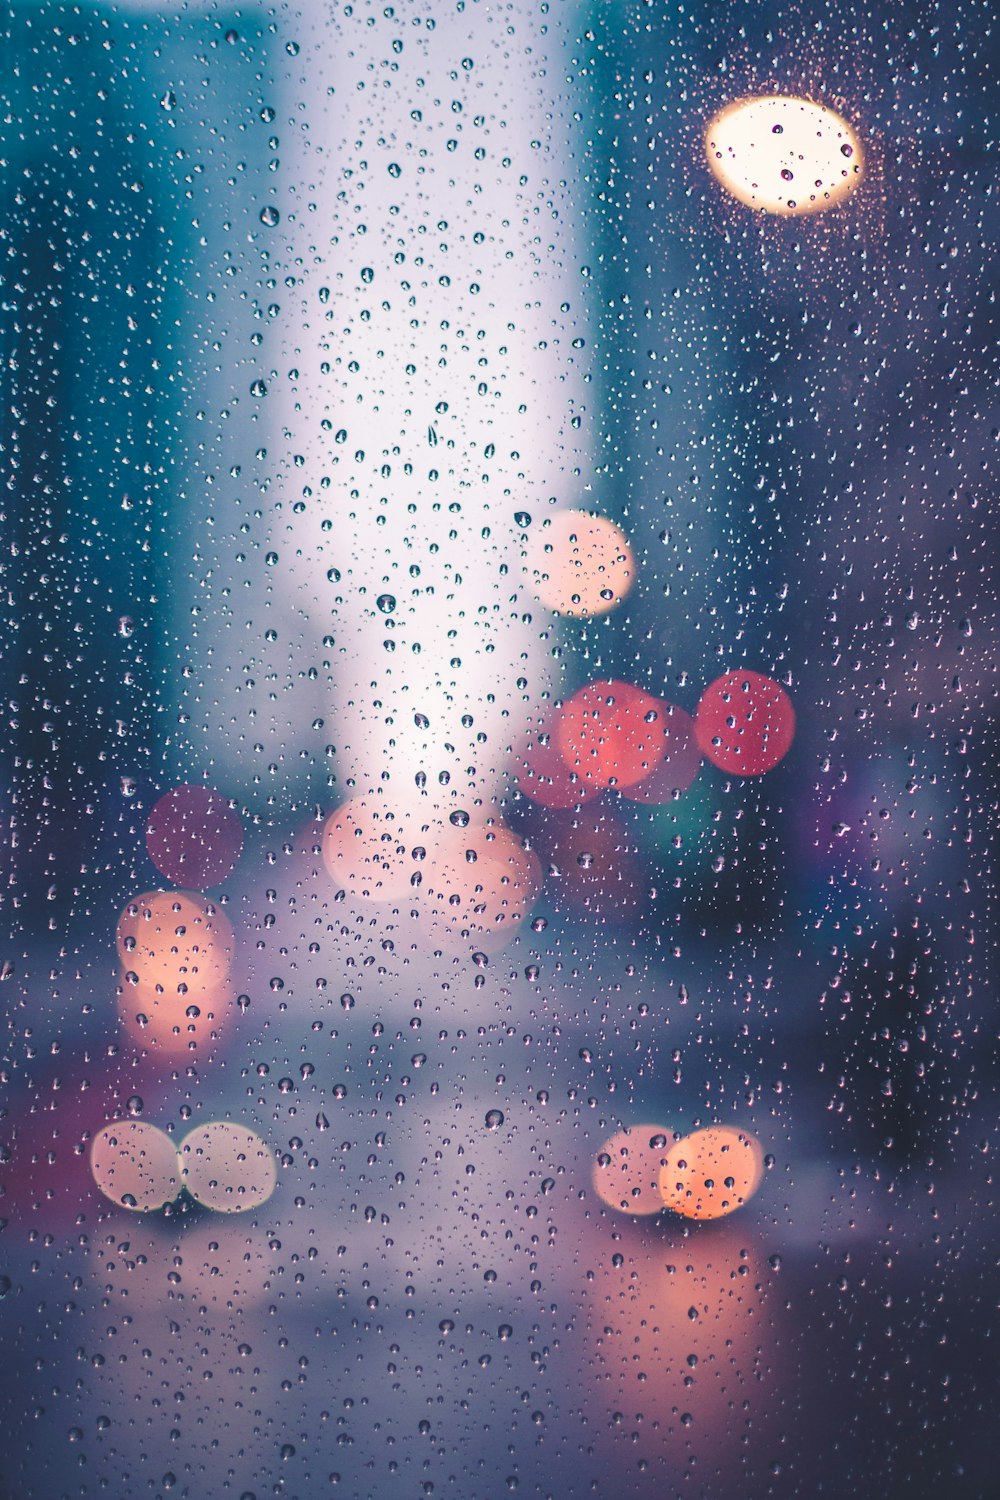 Những bức ảnh nền mưa sẽ khiến bạn liên tưởng đến những cảm giác thư thái và phù hợp cho những ngày mưa. Hãy cùng ngắm nhìn hình ảnh để cảm nhận được hiệu ứng mưa nhé!